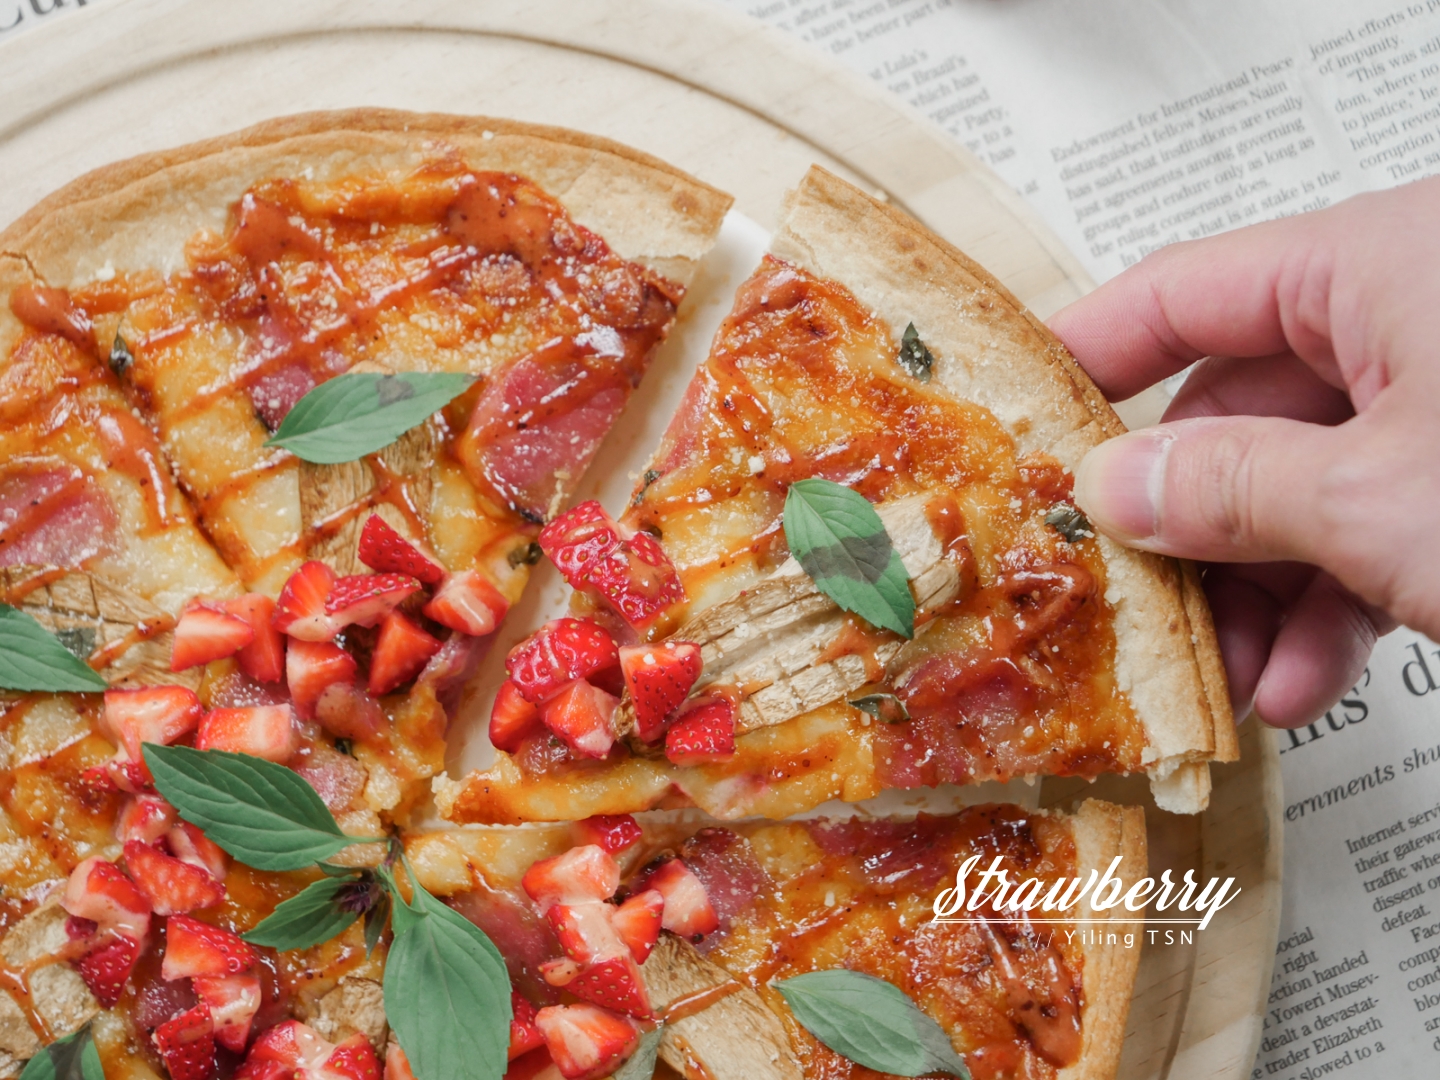 2022內湖草莓季推薦 莓圃休閒農園 免費入園採草莓 石板披薩排餐甜點草莓料理饗宴